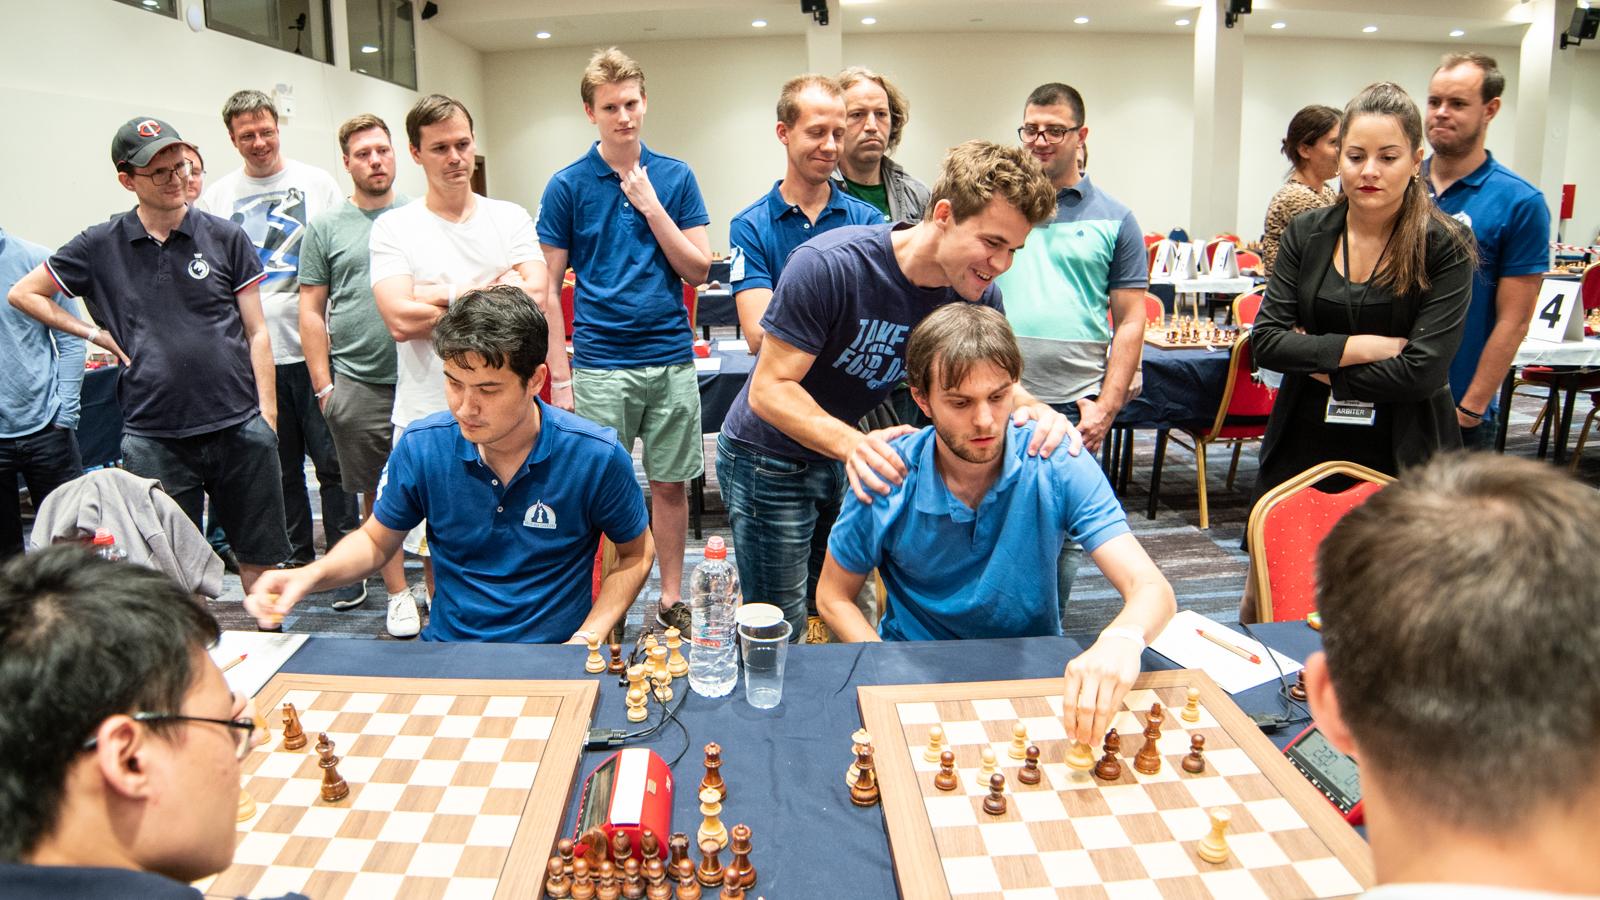 klassisk tobak Velkommen European Chess Club Cup: Carlsen Escapes, Valerenga Sole Leader - Chess.com